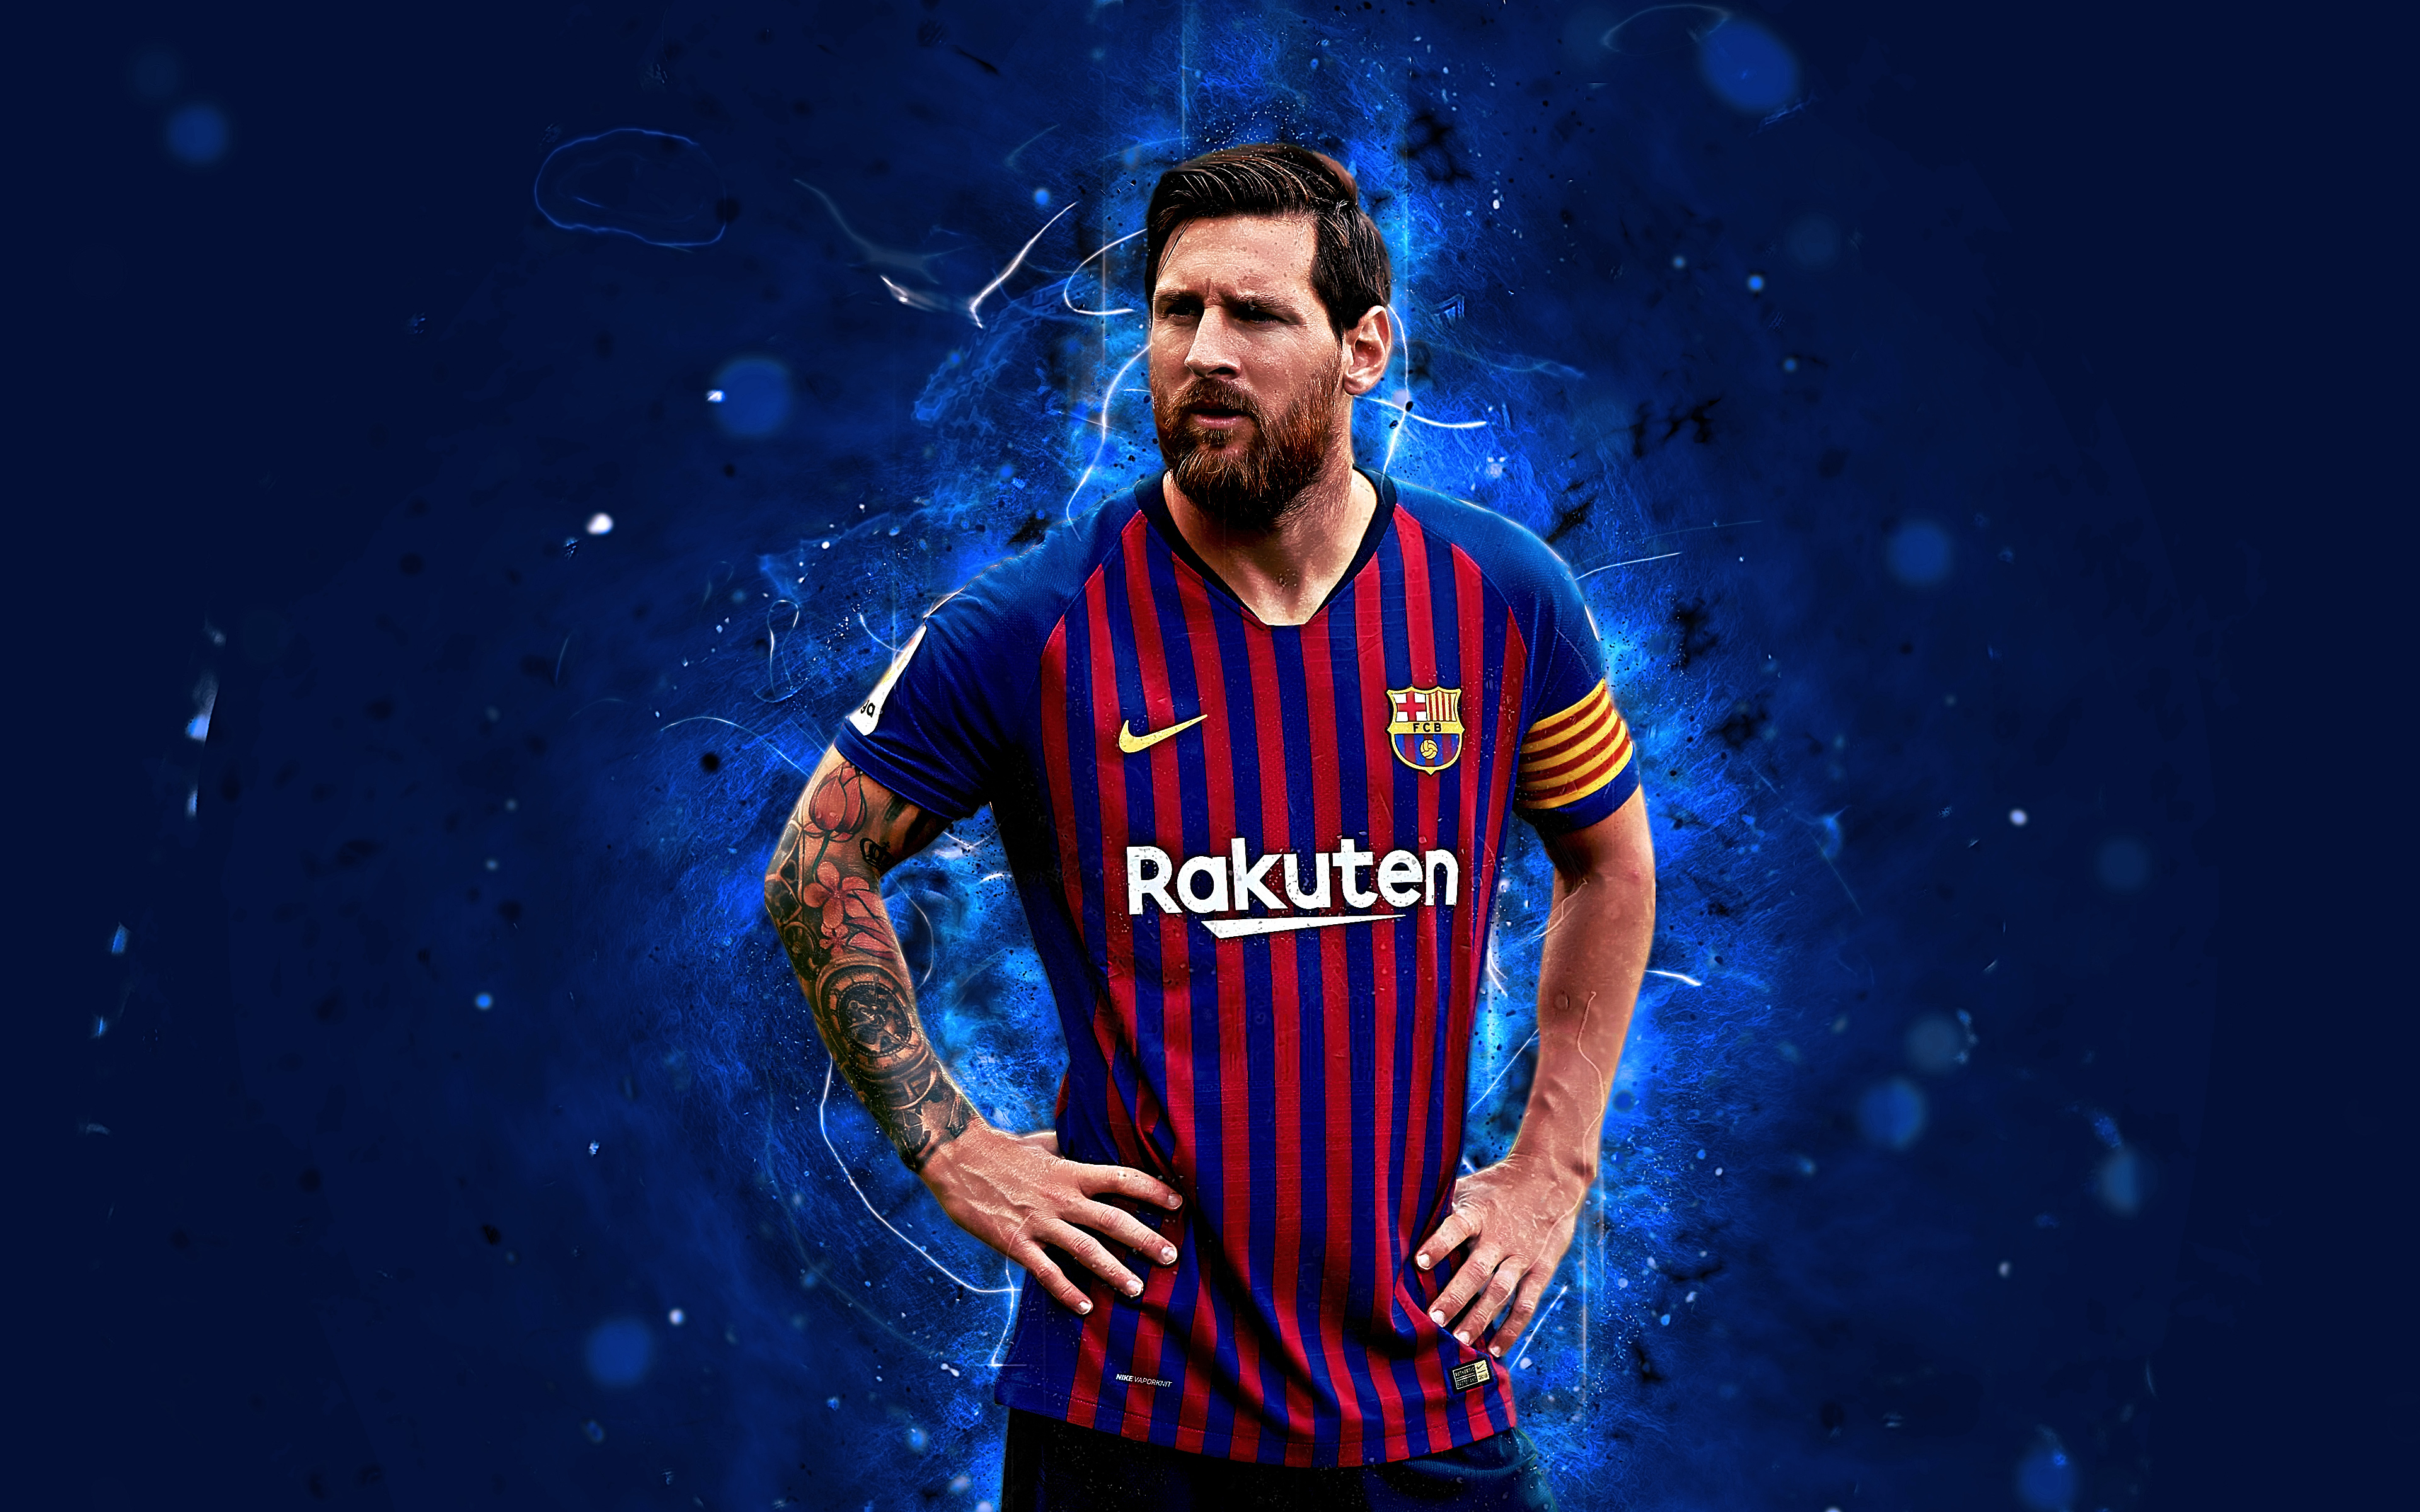 Bức hình nền Messi sẽ mang đến cho bạn không chỉ một phong cách cá tính và độc đáo cho thiết bị của mình mà còn là một sự tôn vinh cho chuỗi thành tích vô tiền khoáng hậu của ngôi sao bóng đá này trên sân cỏ. Hãy cùng chiêm ngưỡng để cảm nhận sự khác biệt và đặc biệt của Messi.